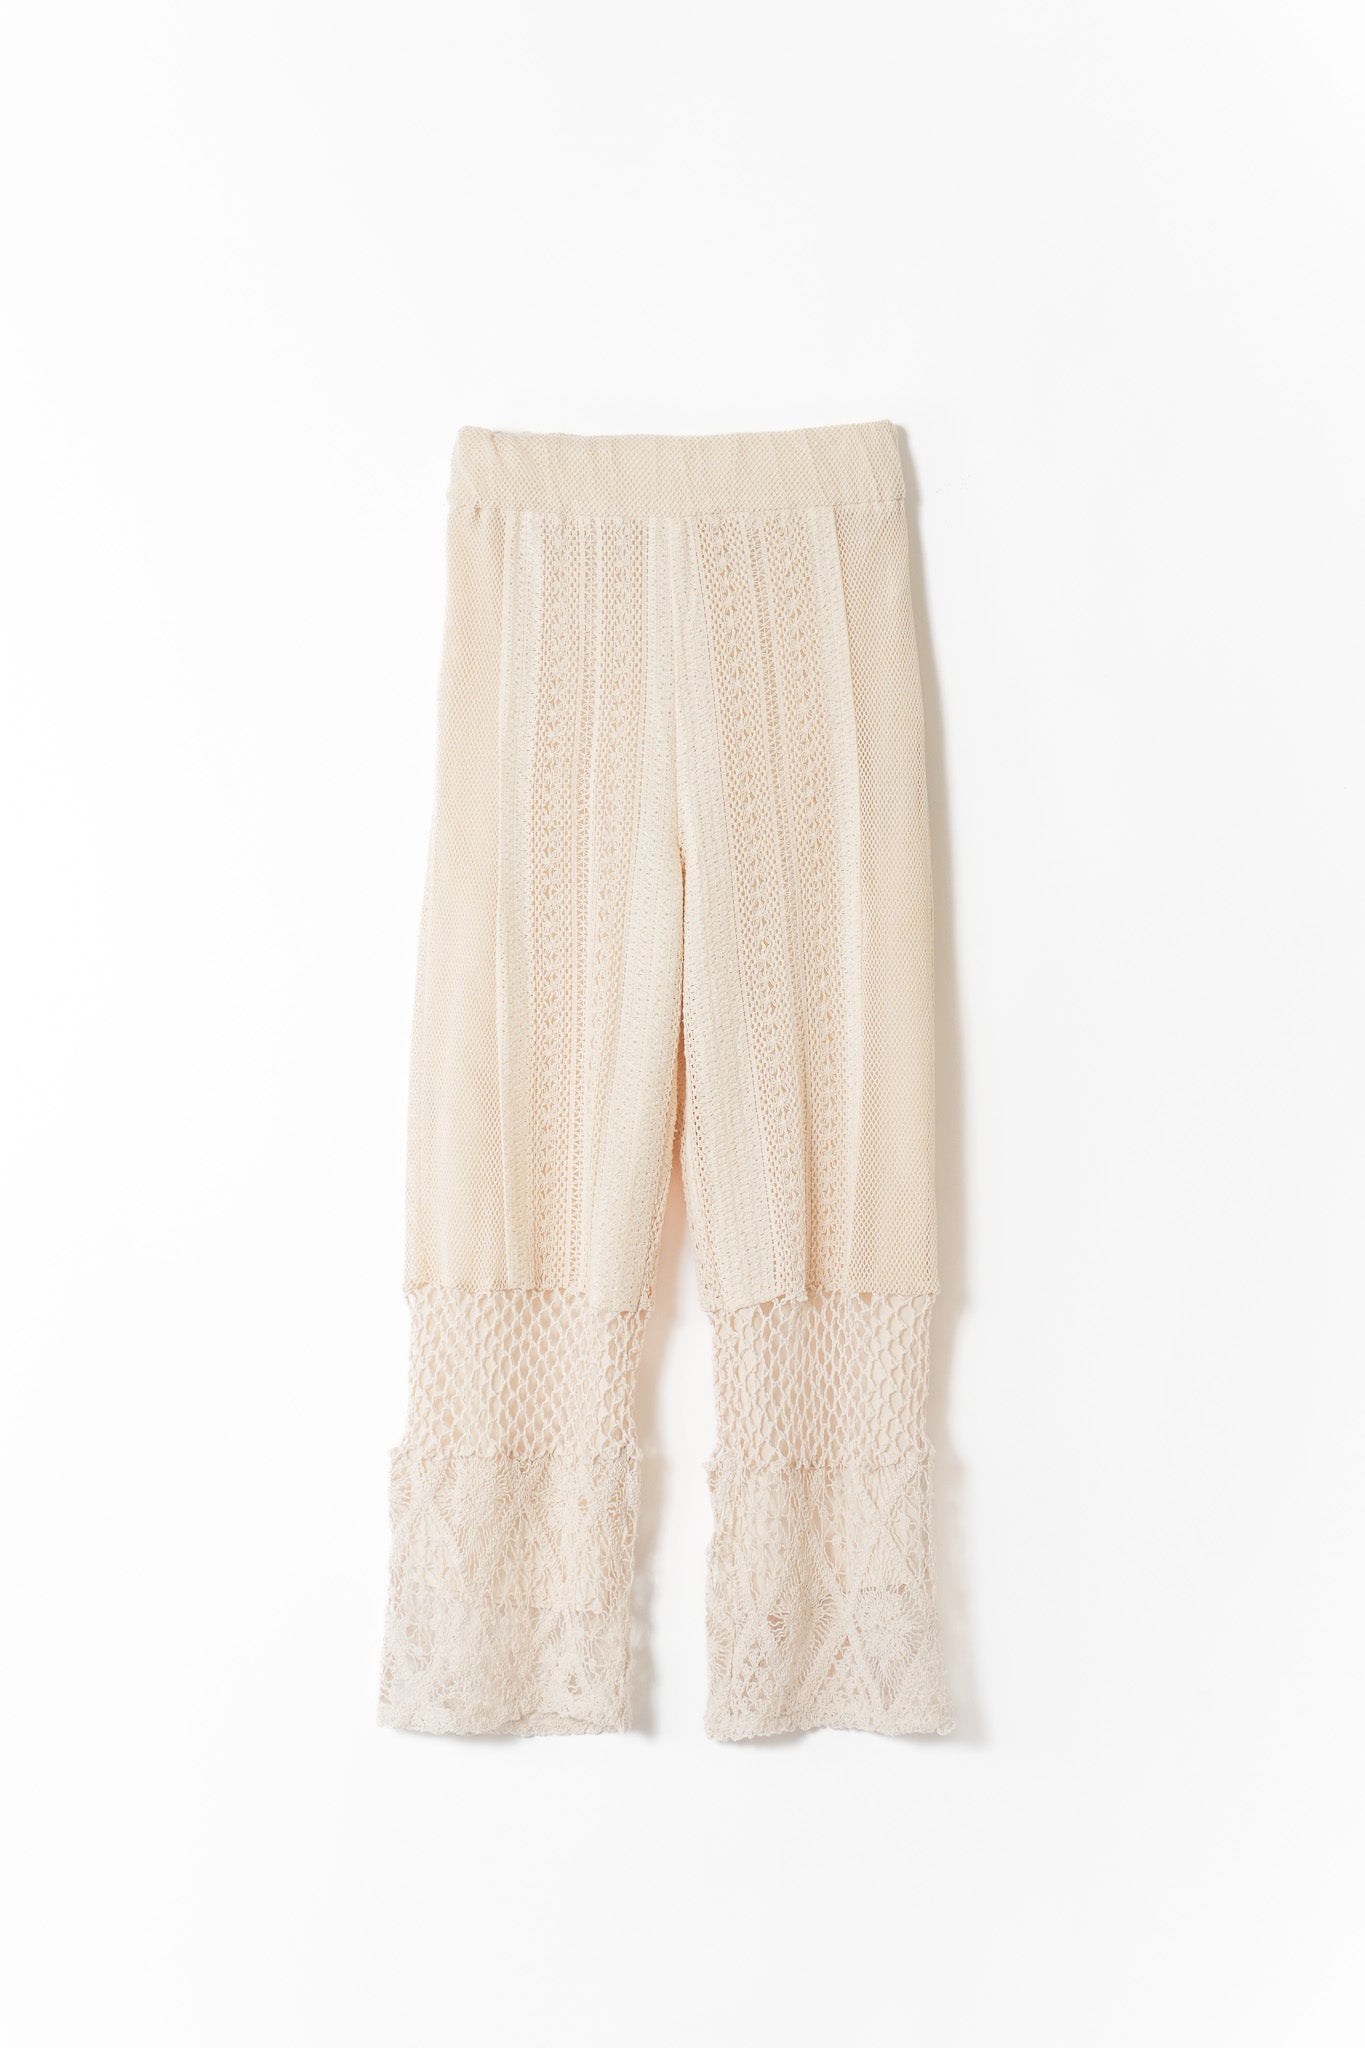 cotton lace patchwork pants